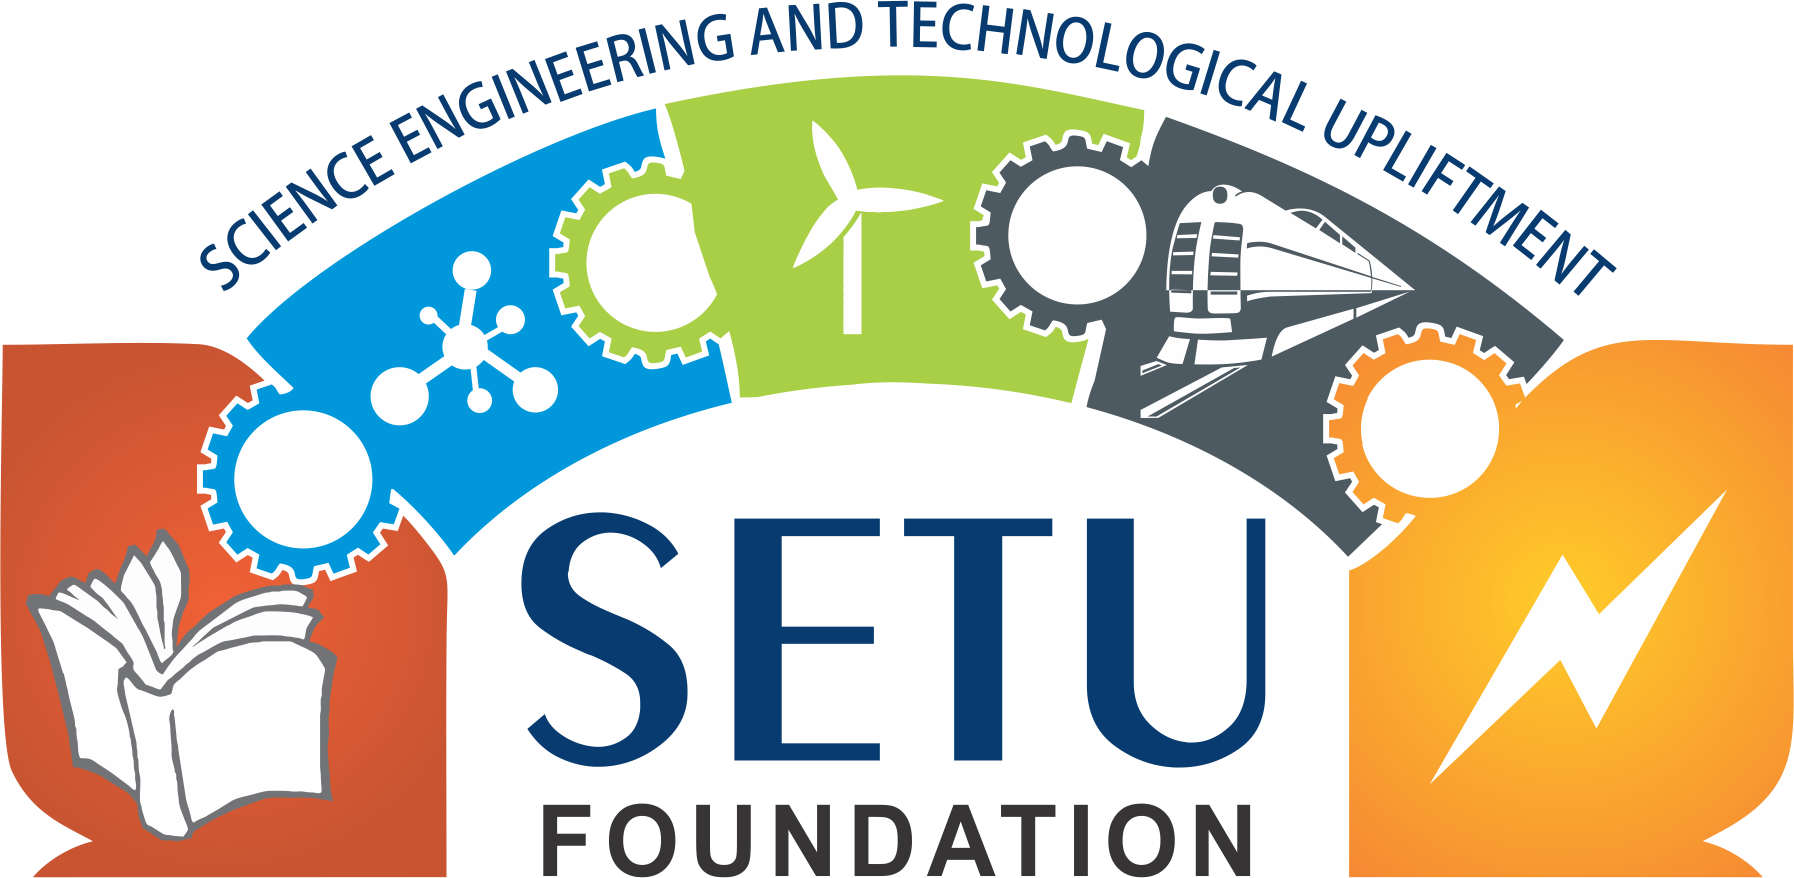 Web designer for SETU Foundation in Surat, India